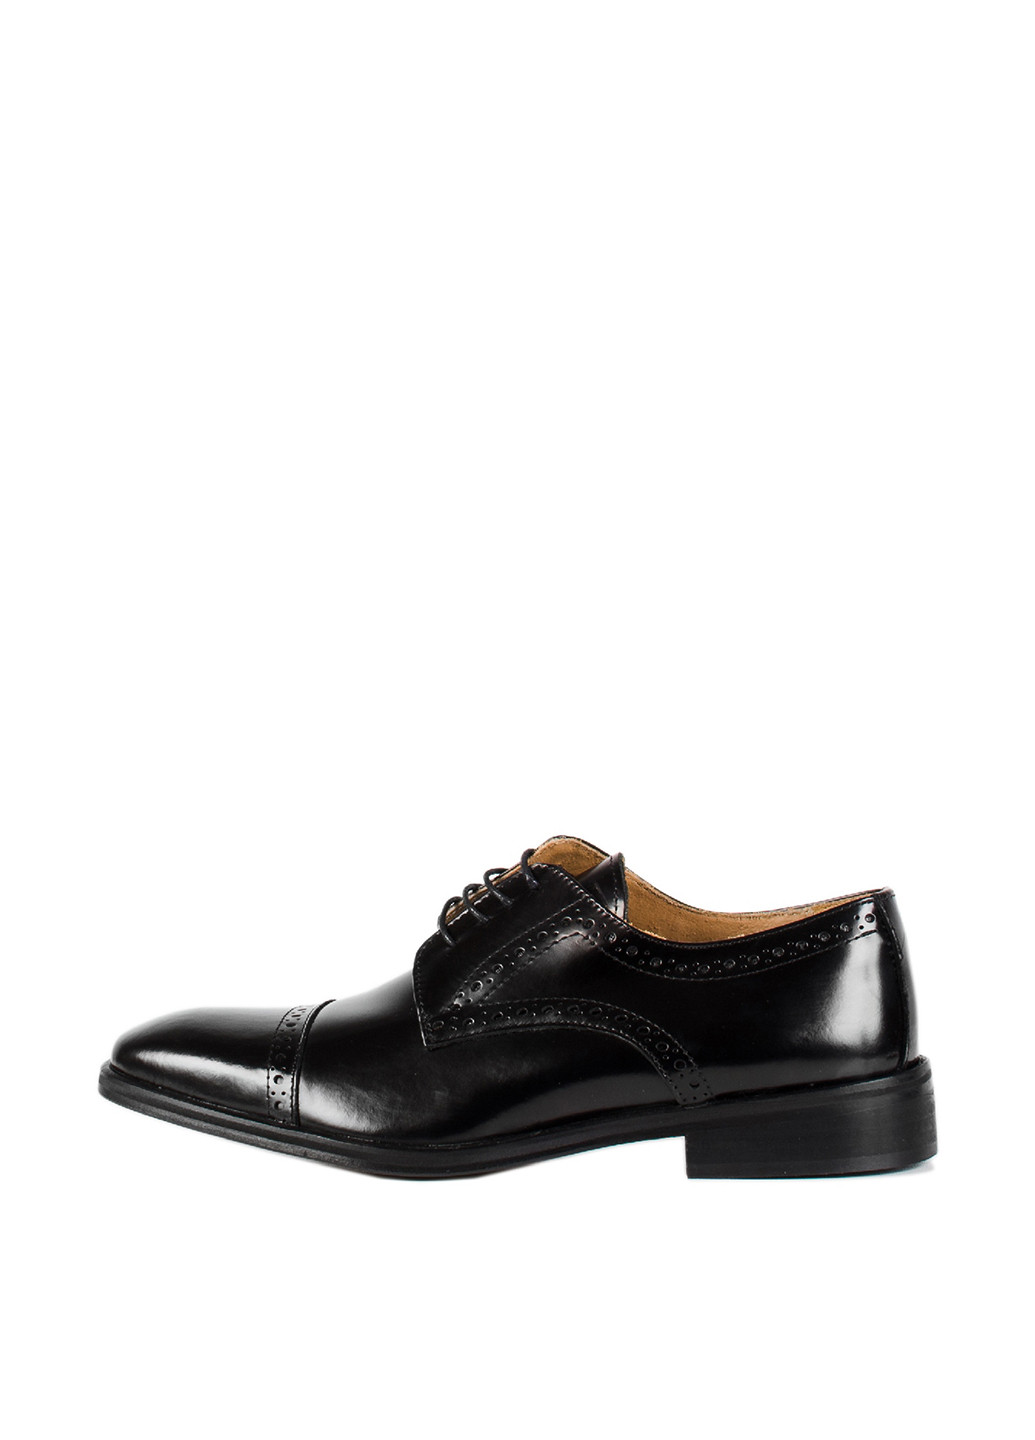 Черные классические туфли Carlo Pazolini на шнурках